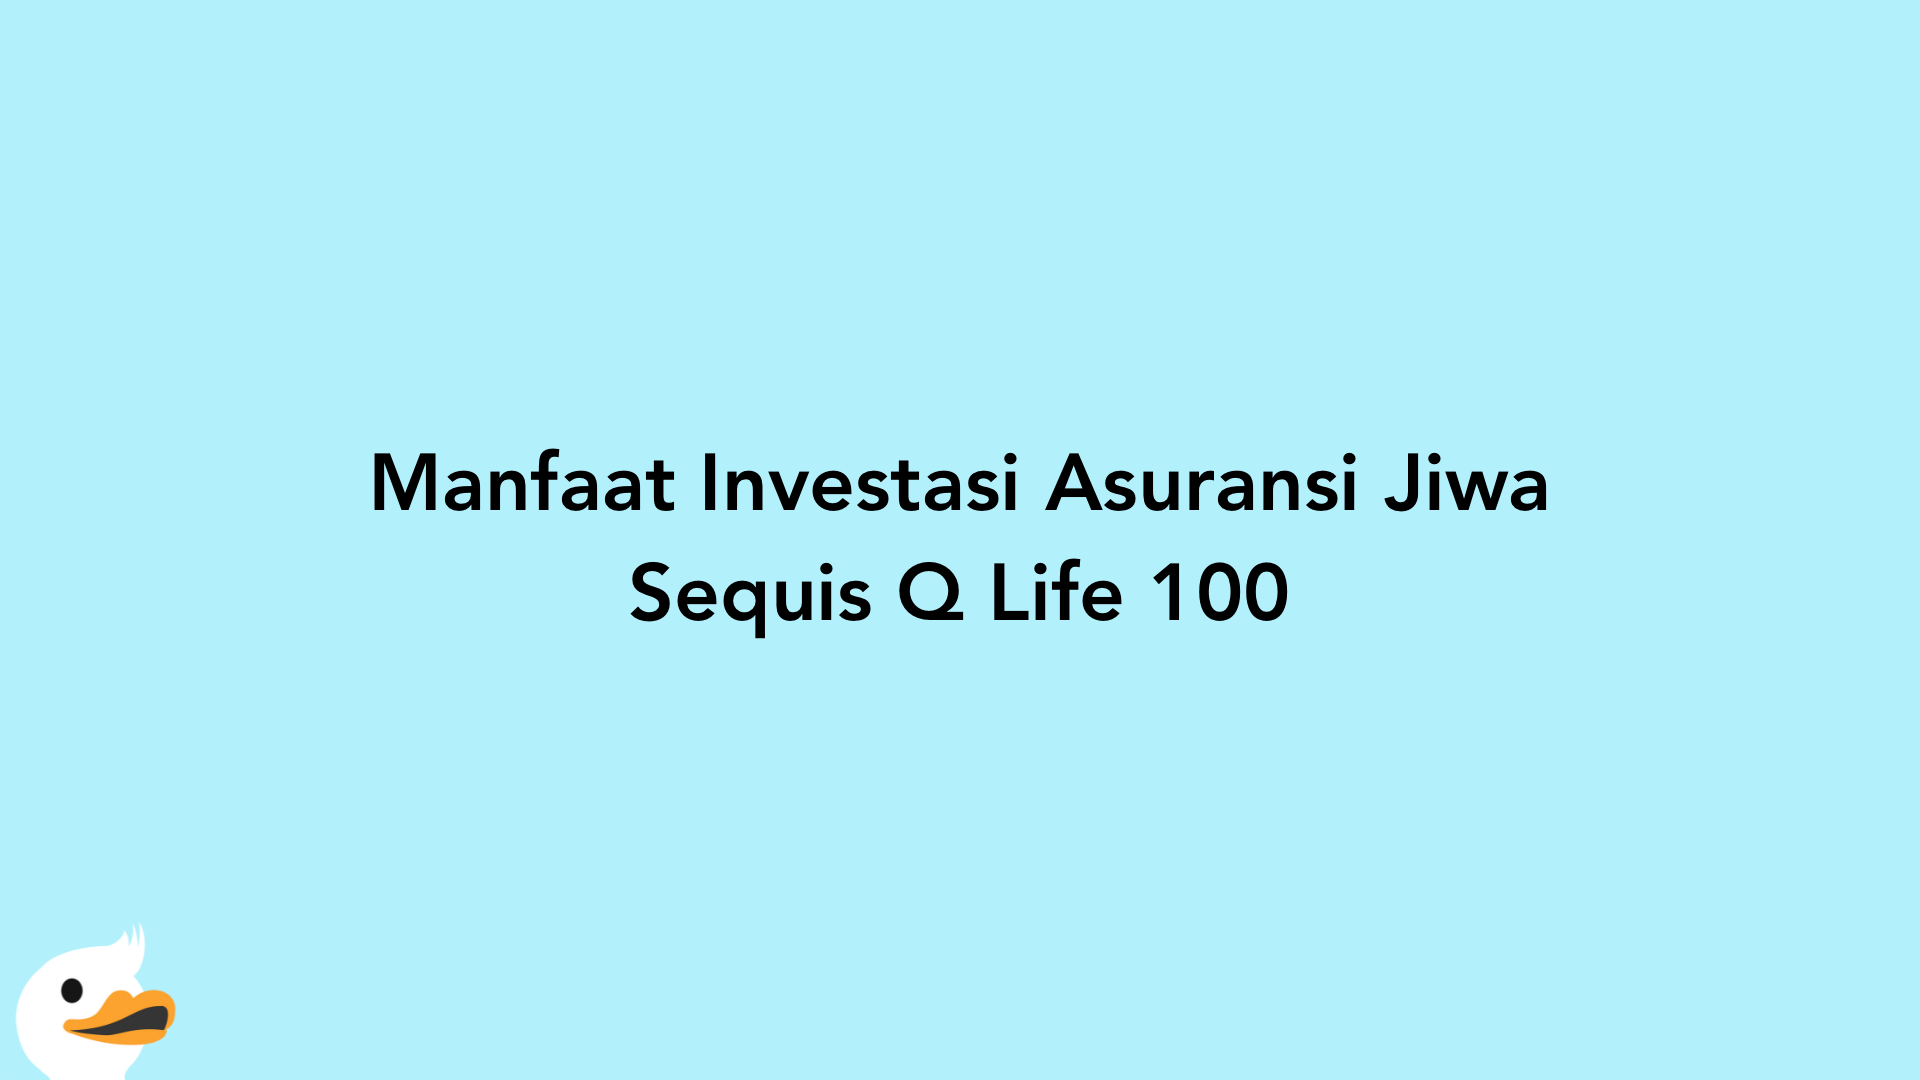 Manfaat Investasi Asuransi Jiwa Sequis Q Life 100